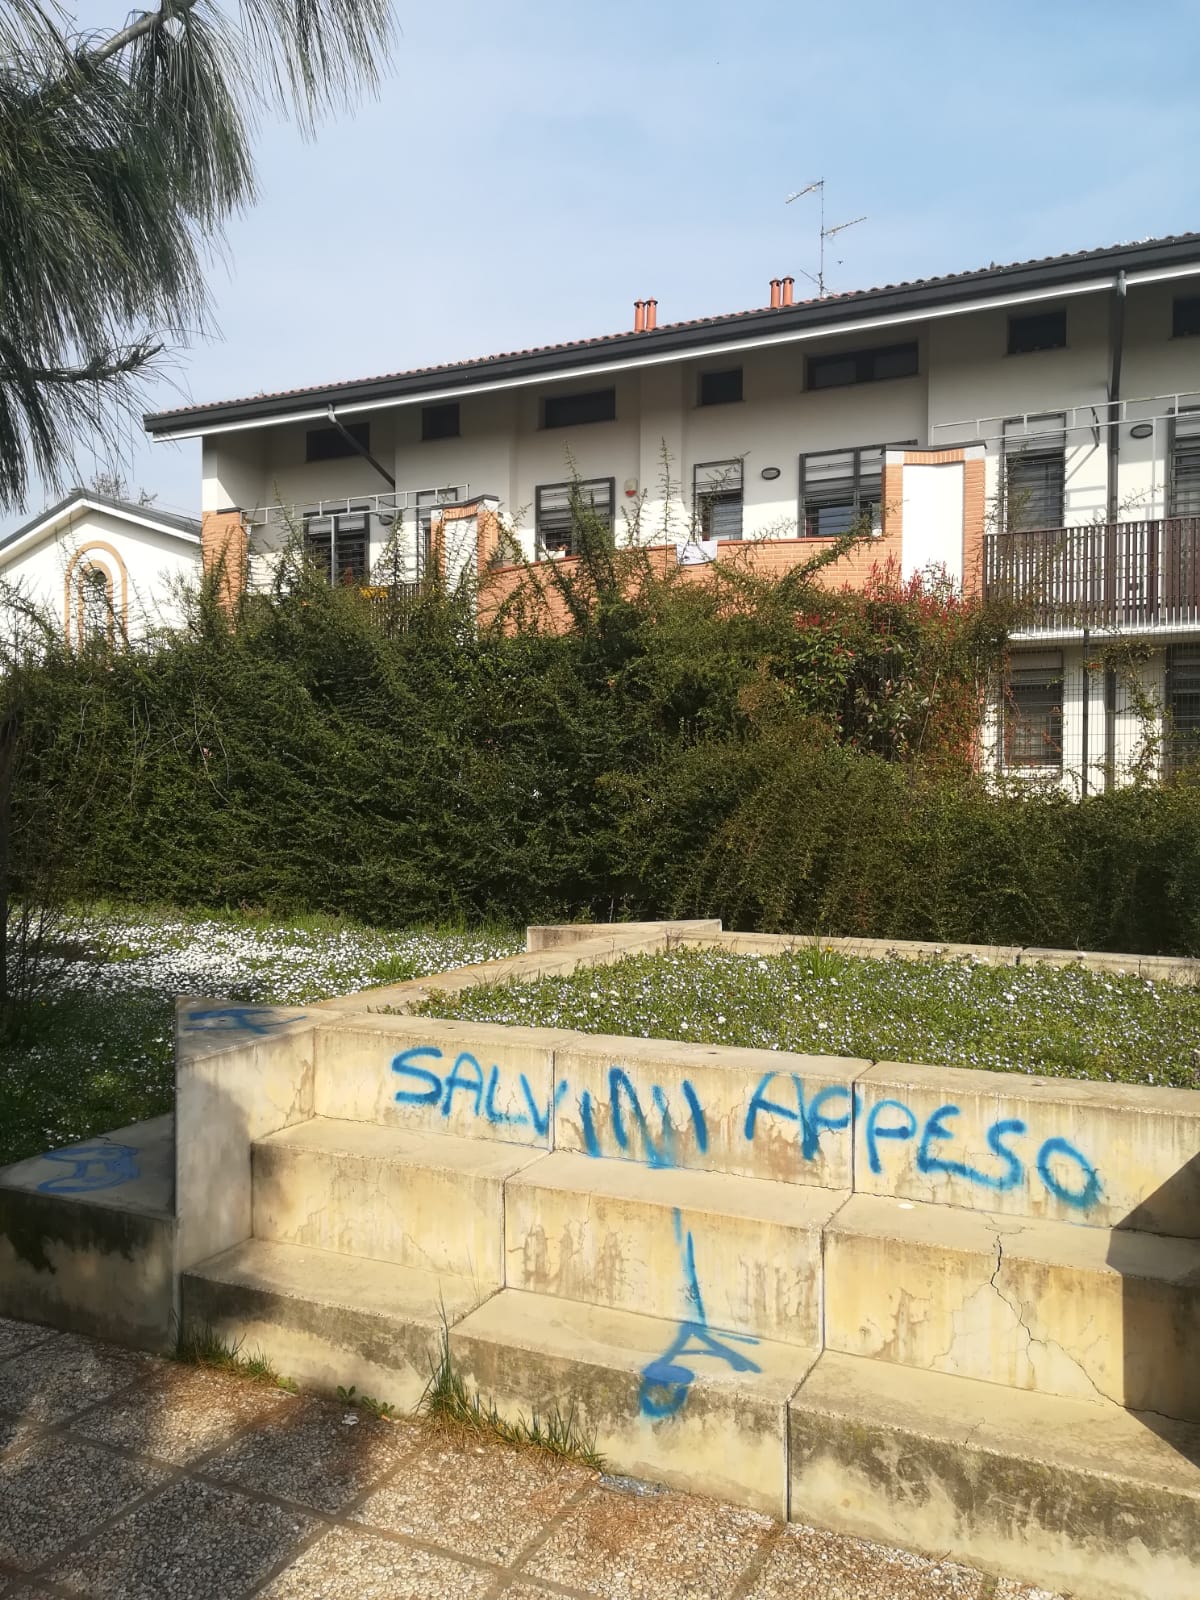 "Salvini appeso", con tanto di forca. E' la scritta shock apparsa sulle panchine del parco pubblico di via Cassiopea a Cassina de' Pecchi.